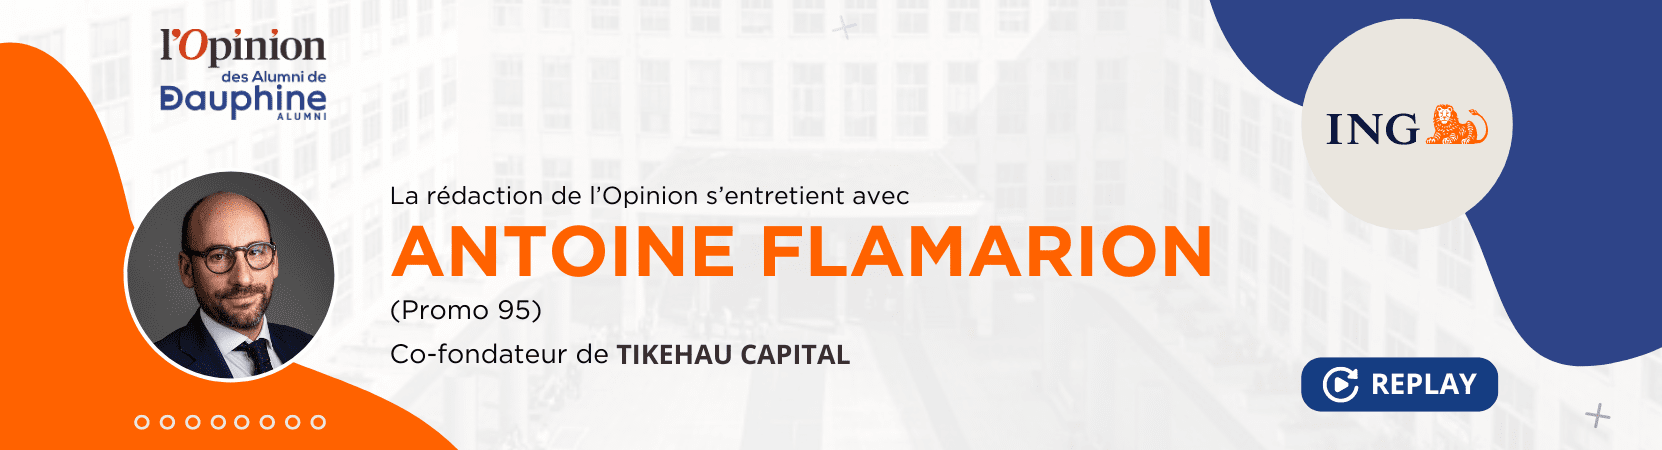 REPLAY - L'Opinion des Alumni de Dauphine avec Antoine Flamarion